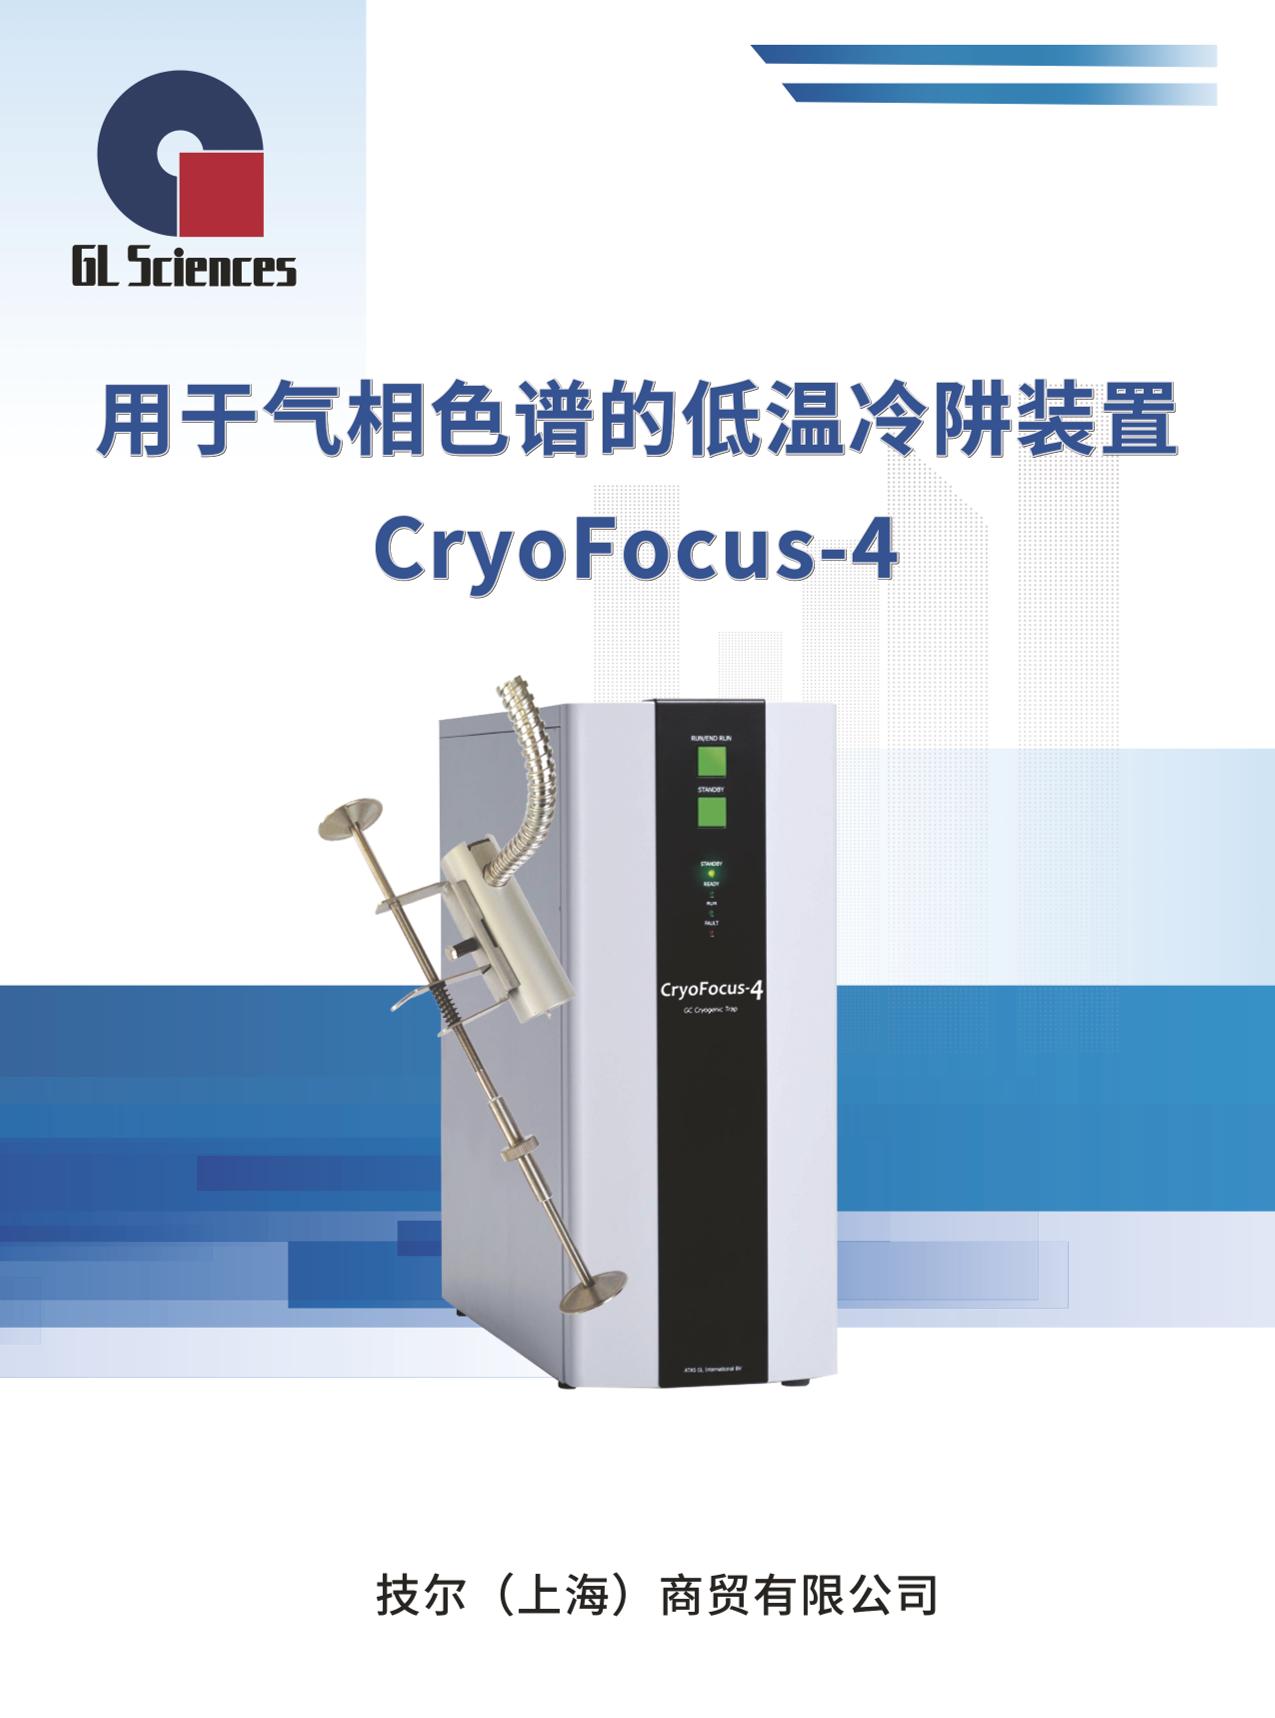 GL049 CryoFocus-4